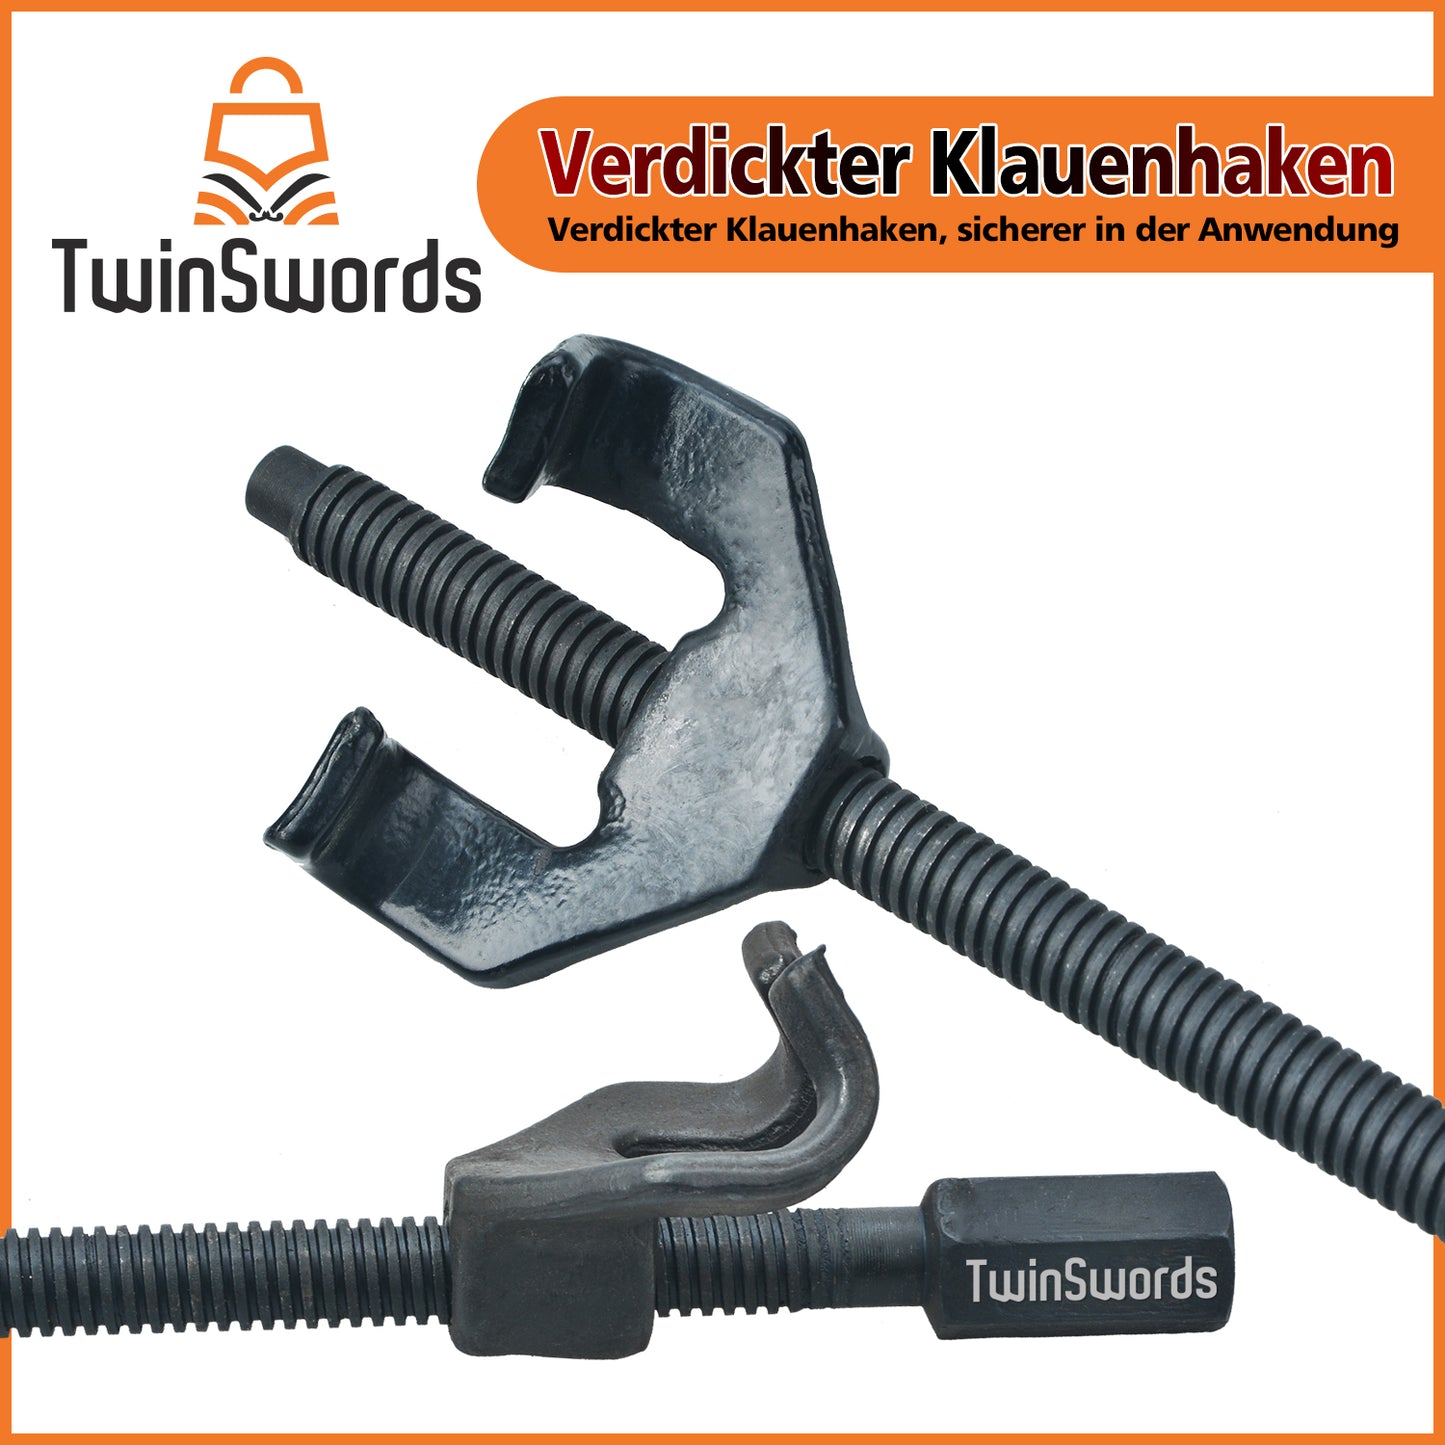 TwinSwords Federspanner Satz Werkzeug | Tieferlegung Tuning Universal Federbein spannen, bis 370mm. 2 Tlg. 1 Set